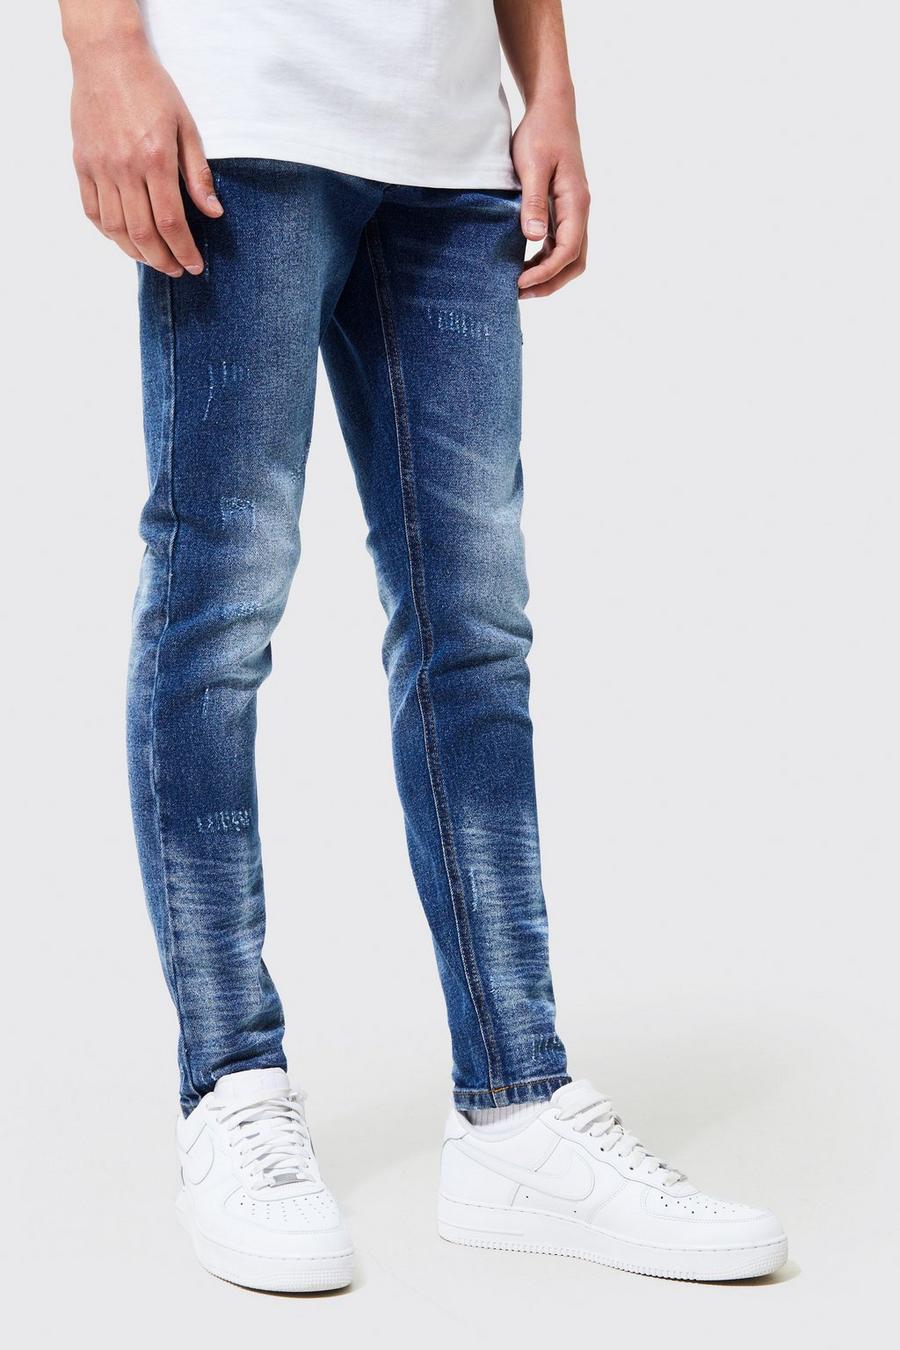 כחול ביניים azul סקיני ג'ינס נמתח עם קרעים